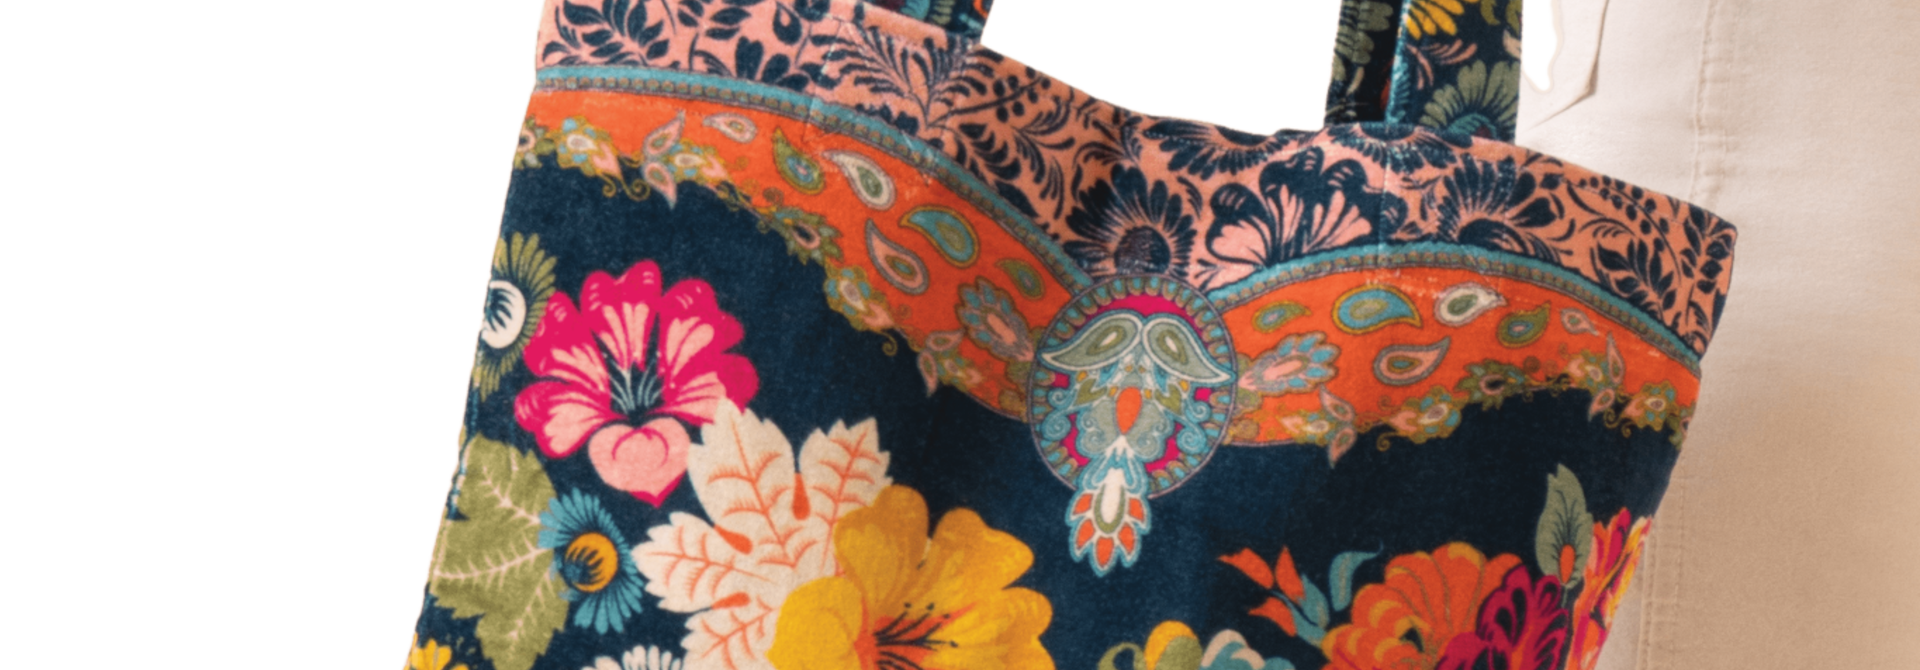 Vintage Floral | The Women's Velvet Tote Bag, Ink - One Size